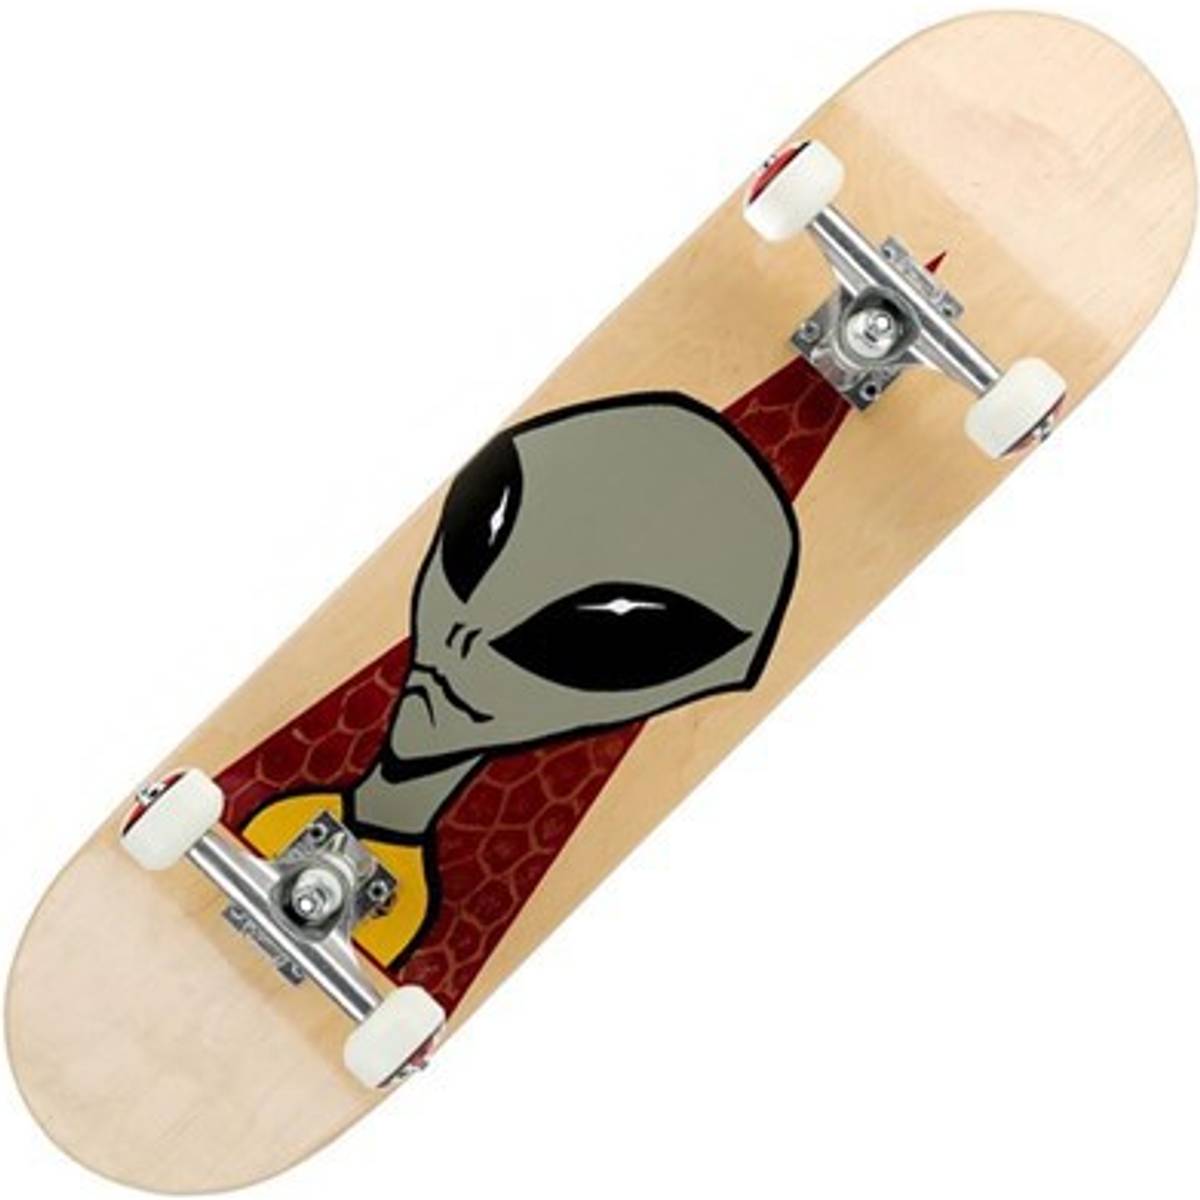 Alien Workshop Skateboard (14 produkter) hos PriceRunner • Se ...